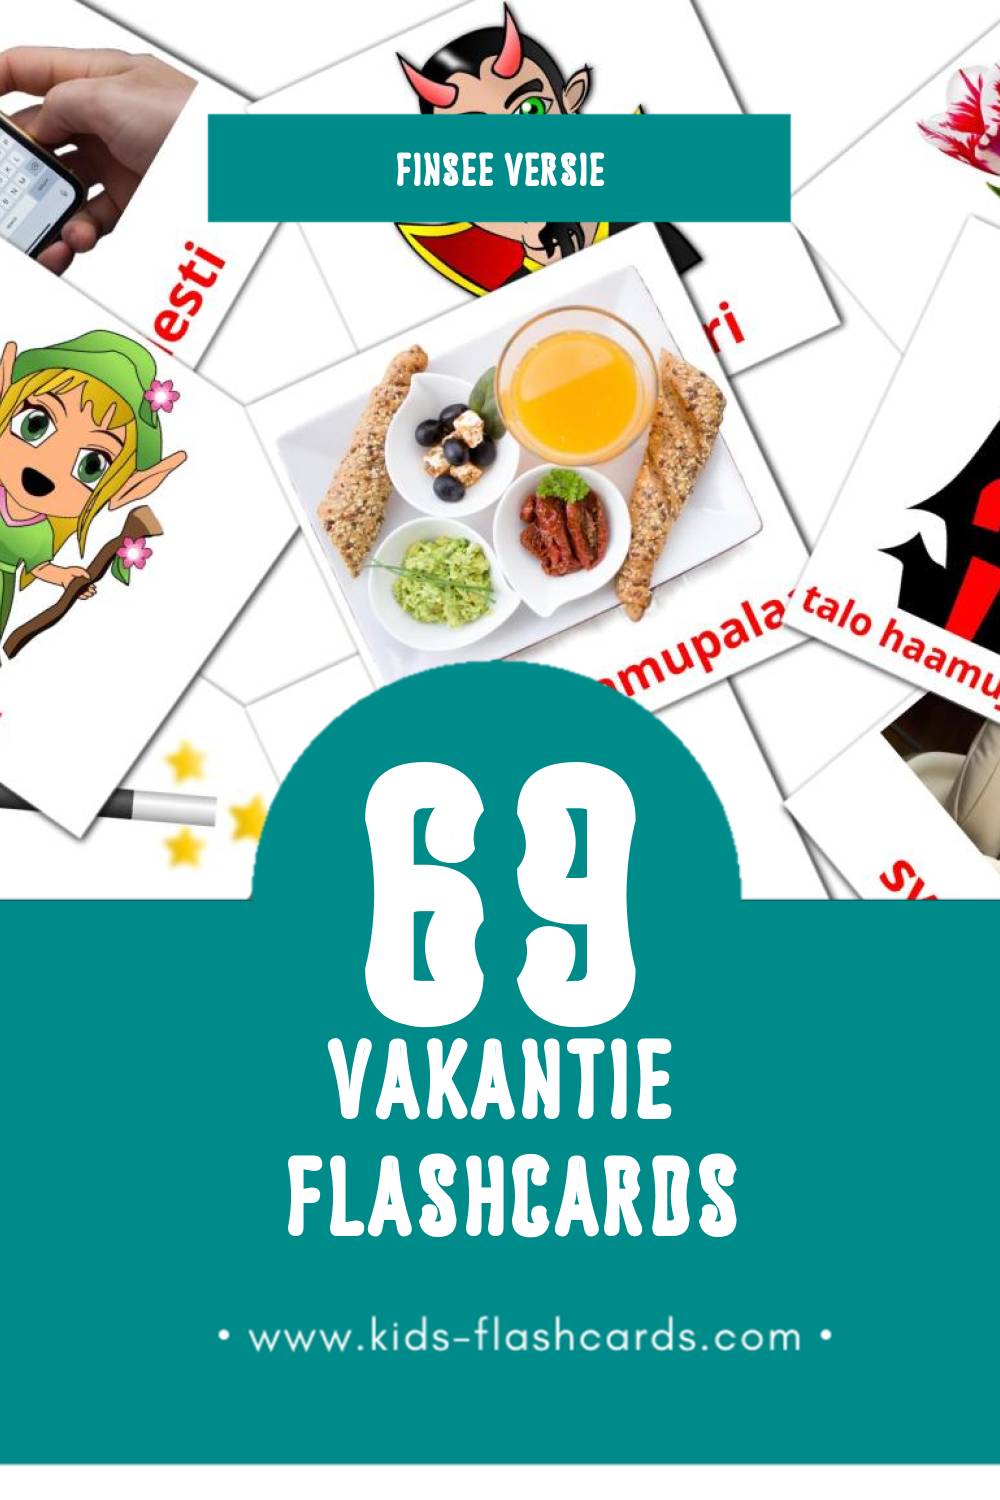 Visuele Lomat Flashcards voor Kleuters (69 kaarten in het Finse)